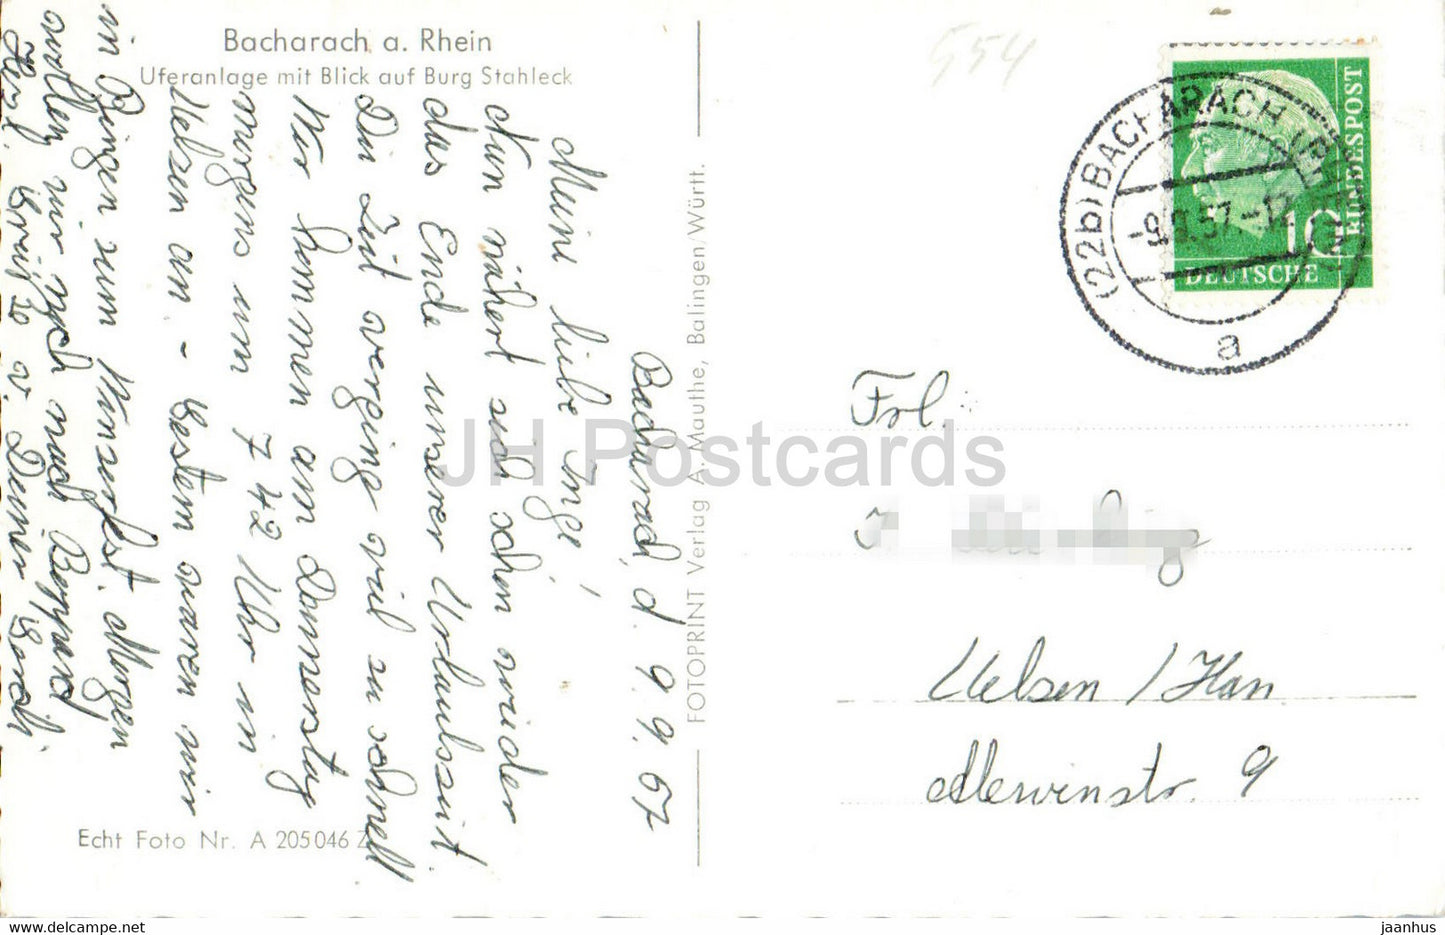 Bacharach a Rhein - Uferanlage mit Blick auf Burg Stahleck - carte postale ancienne - 1957 - Allemagne - utilisé